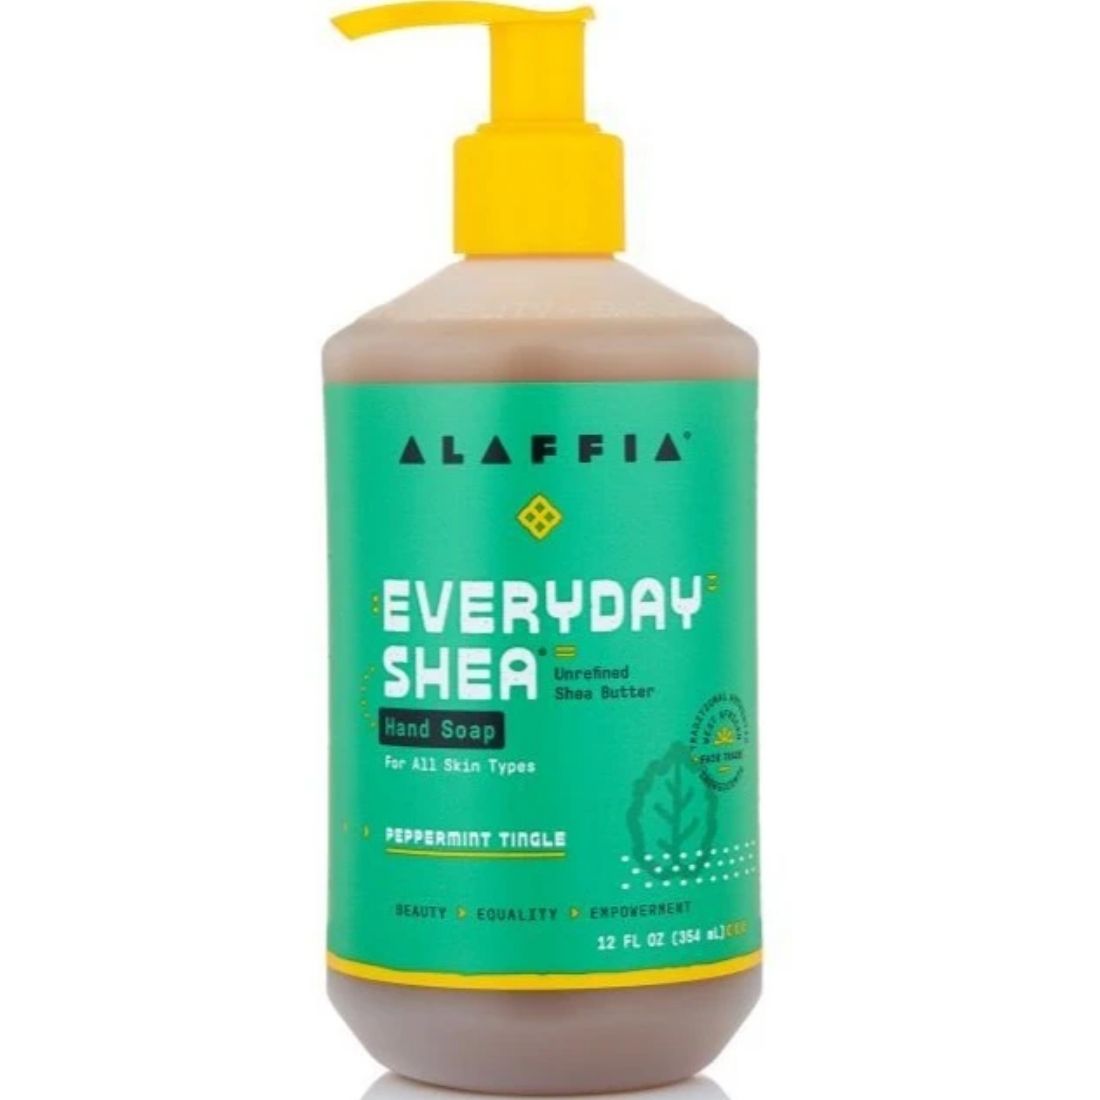 Alaffia Everyday Shea Hand Soap